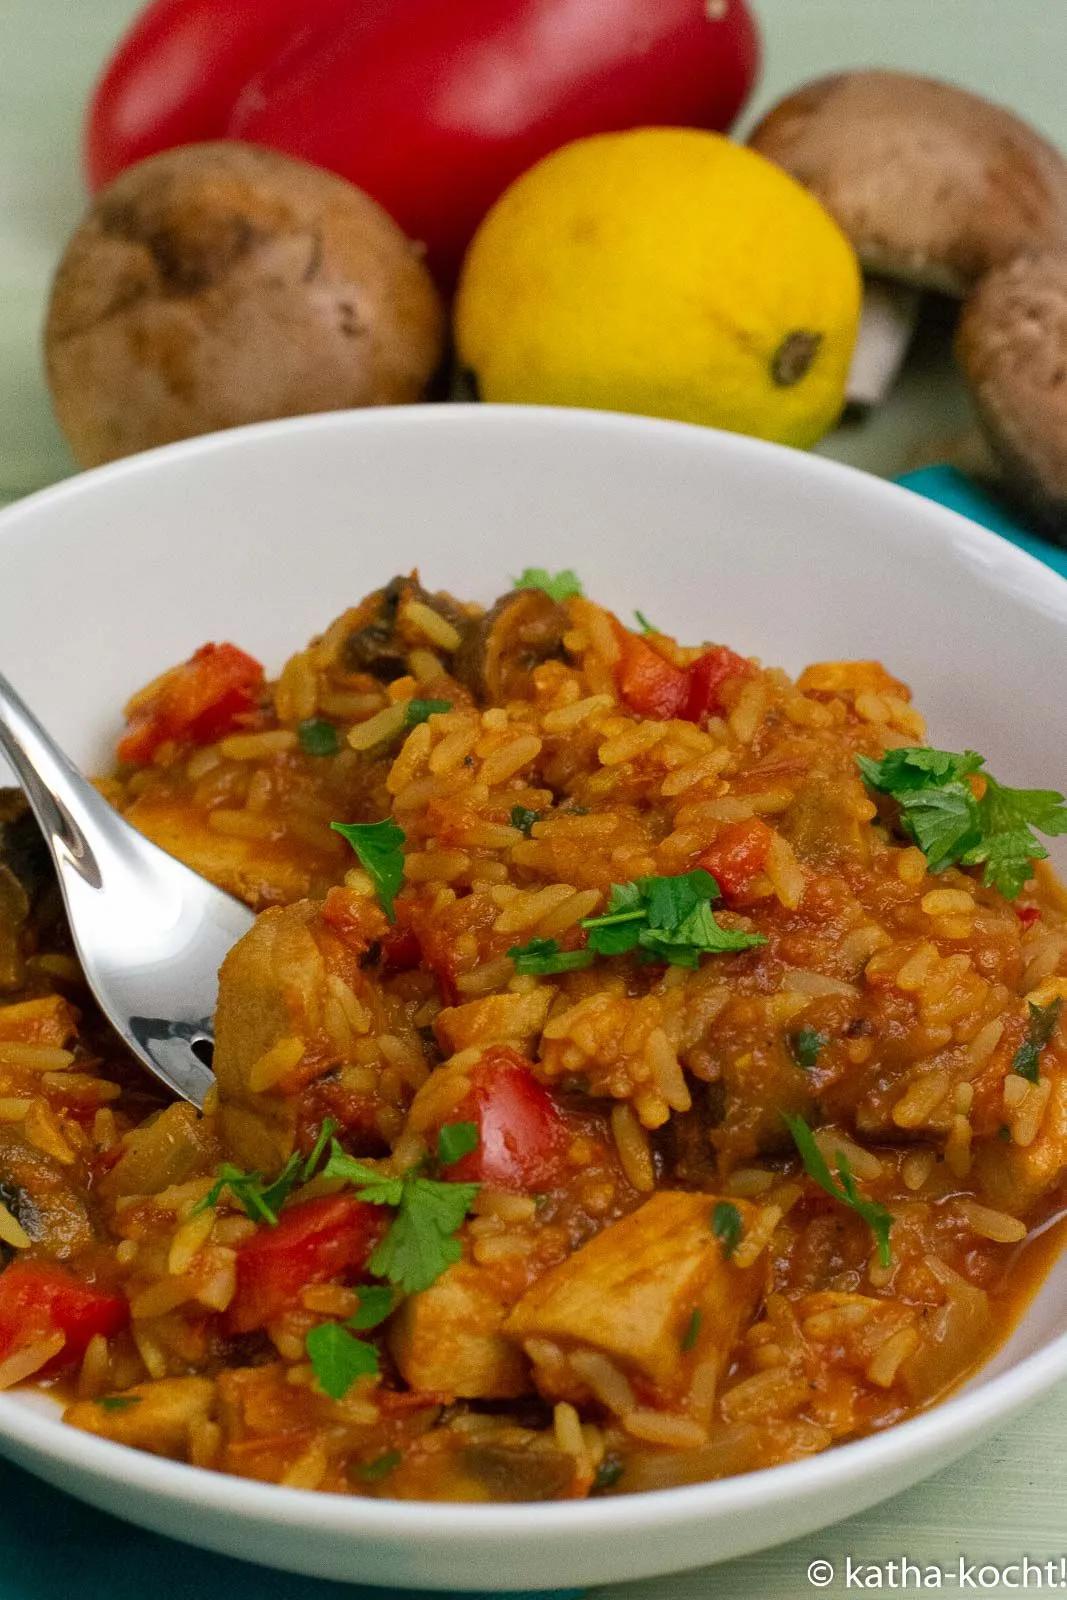 Thunfisch-Reistopf mit Tomatensauce - Katha-kocht! | Essen kochen ...